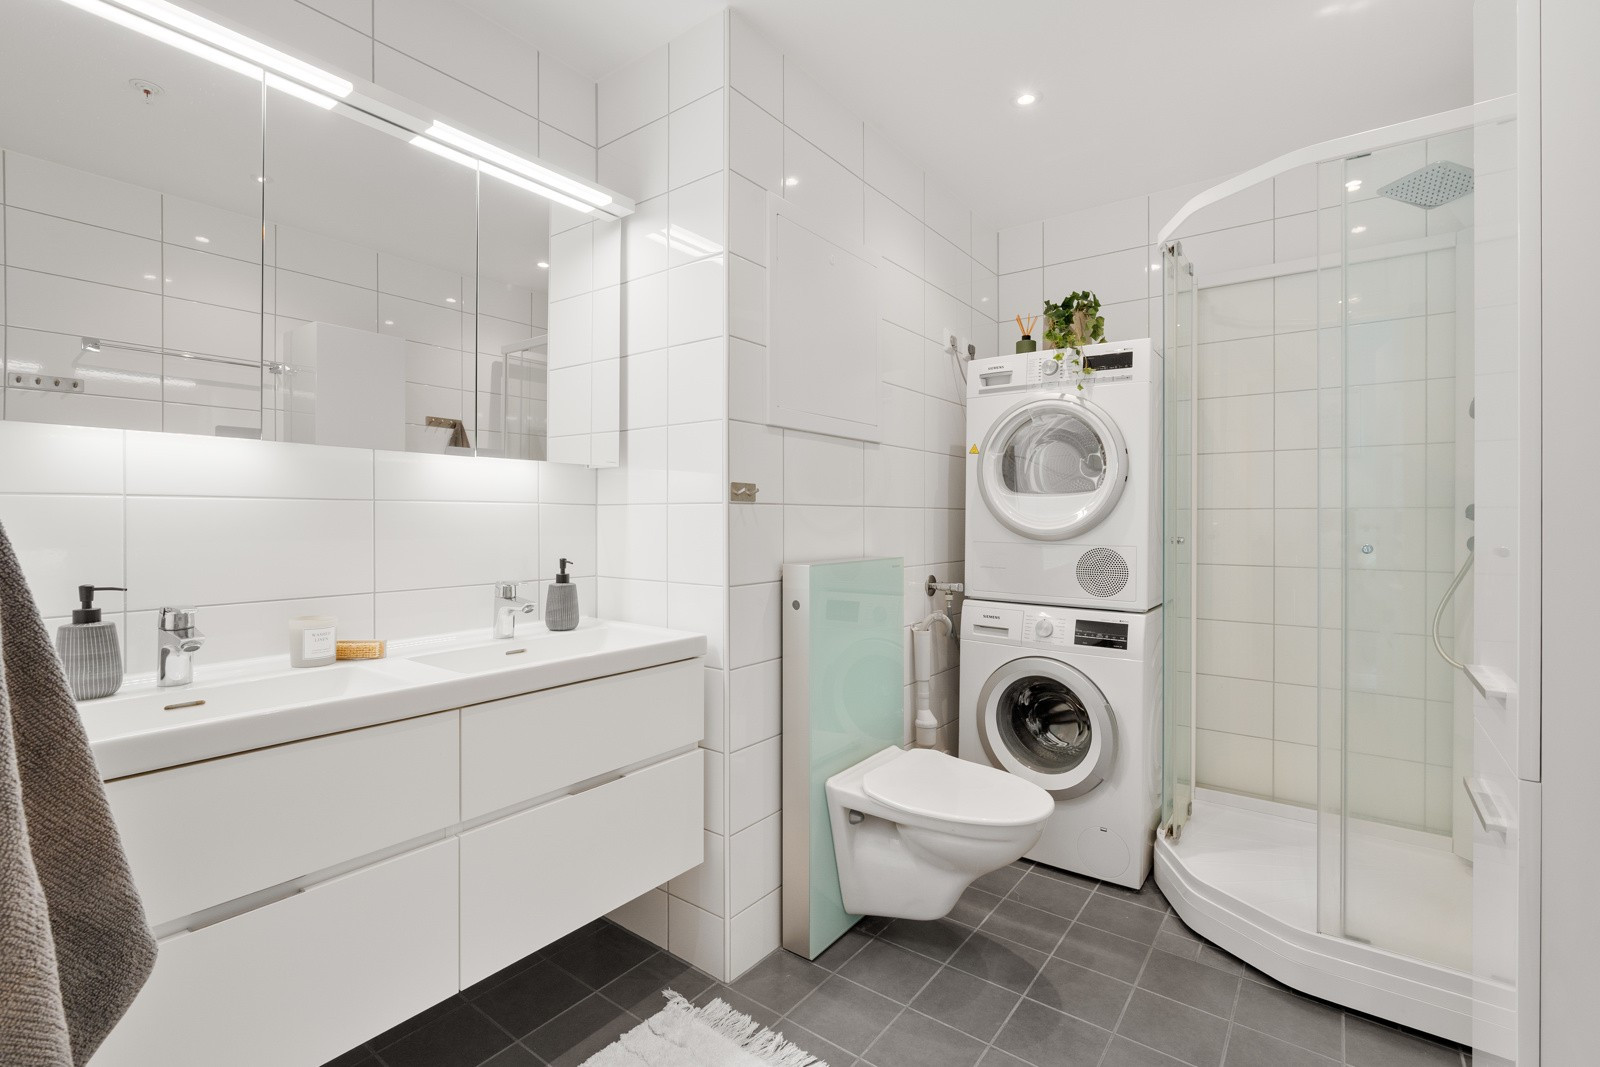 Flislagt bad med vegghengt wc, moderne innredning og dusjkabinett. Her har du god plass til vaskemaskin og tørketrommel.